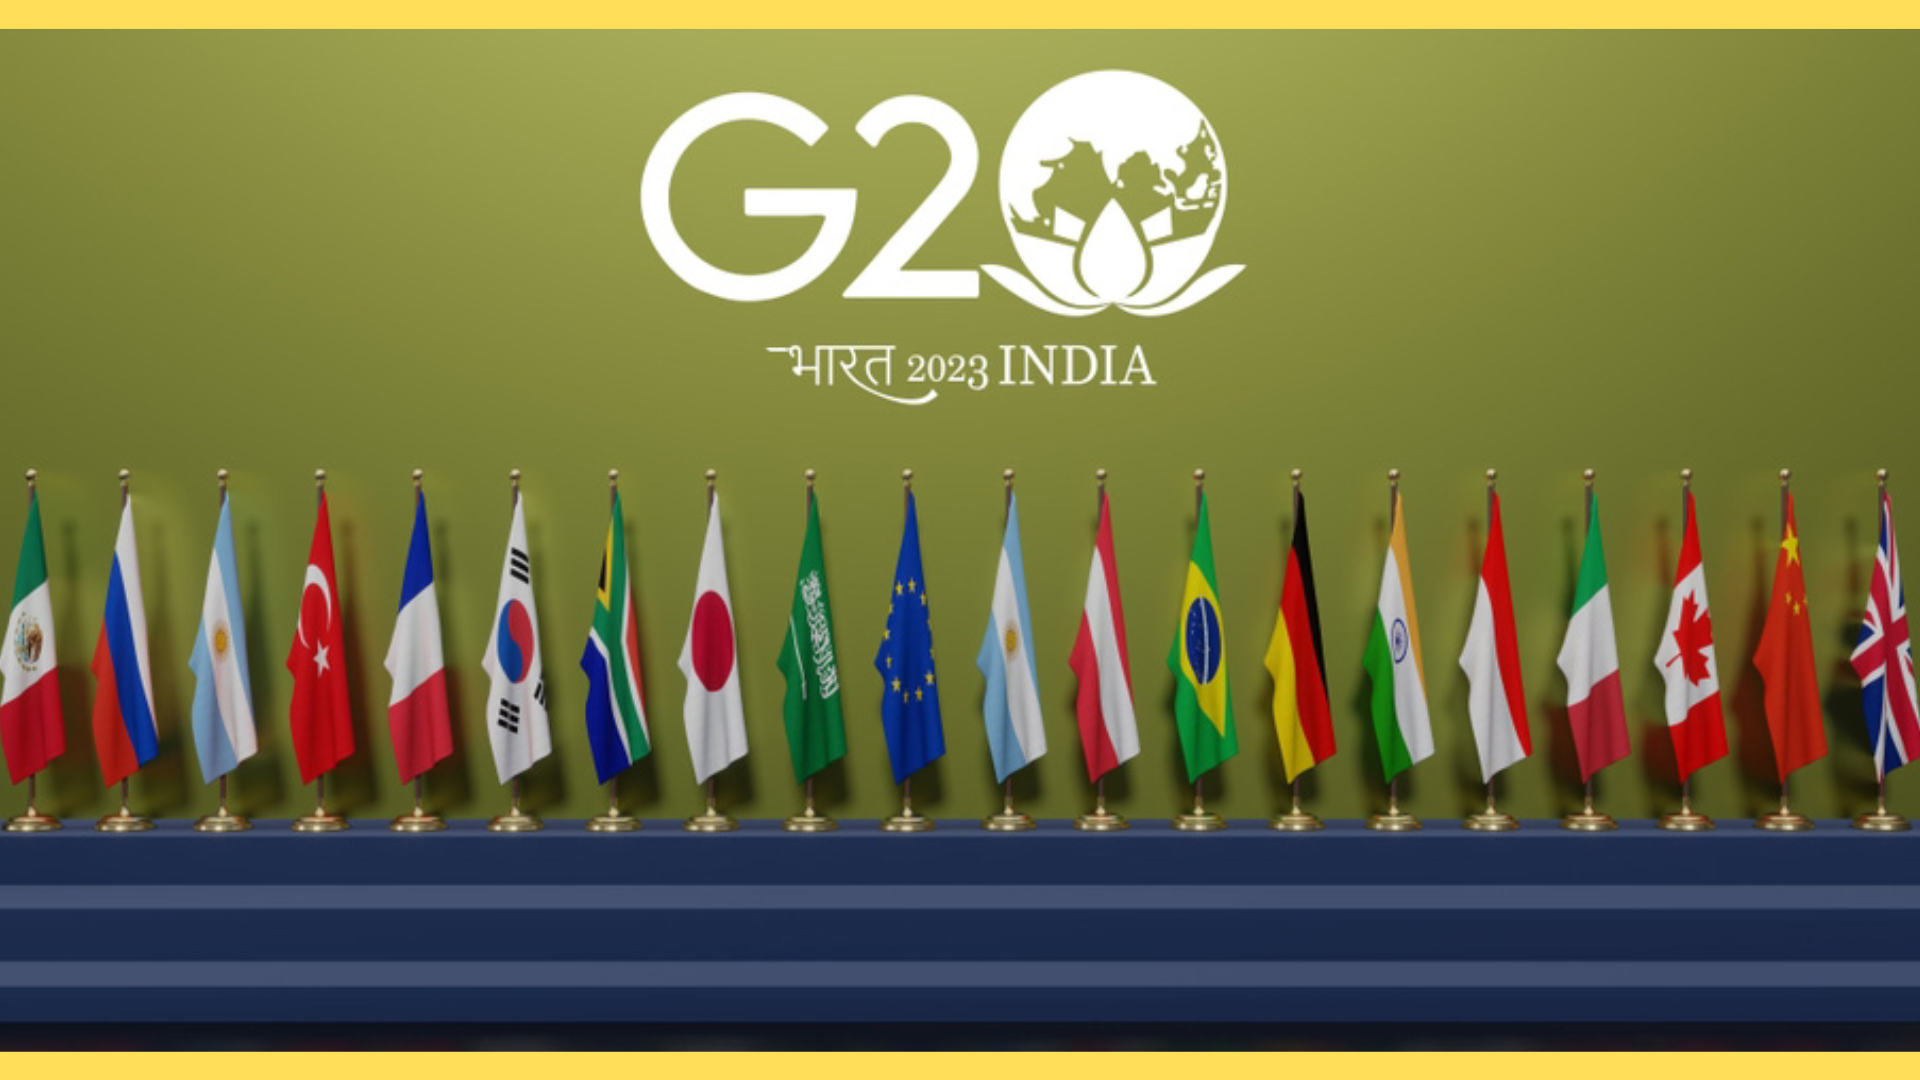 G20 kya hai hindi